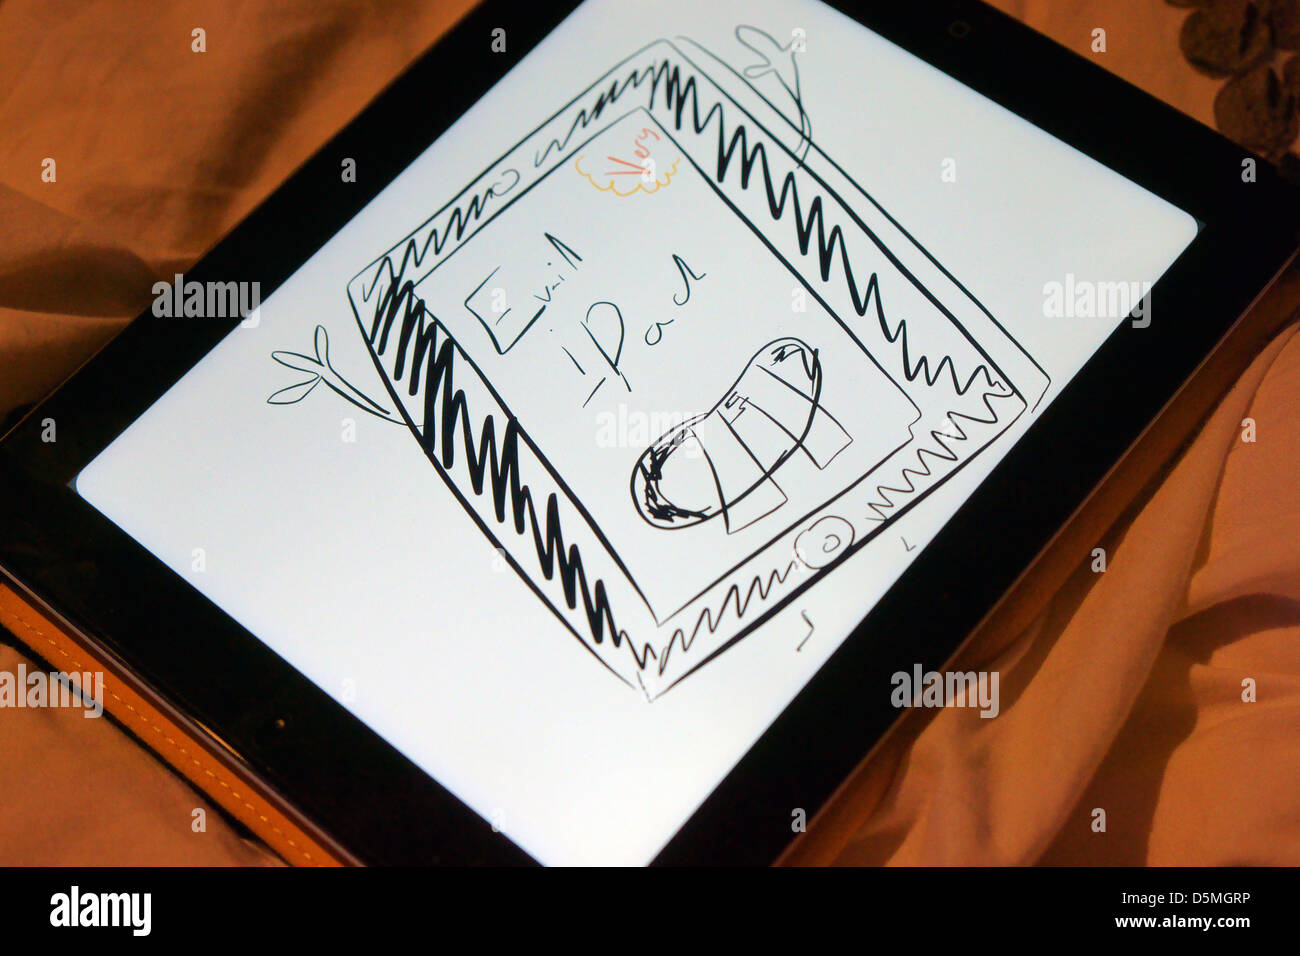 Très mal l'Ipad iPad ipad dessin de cas Banque D'Images